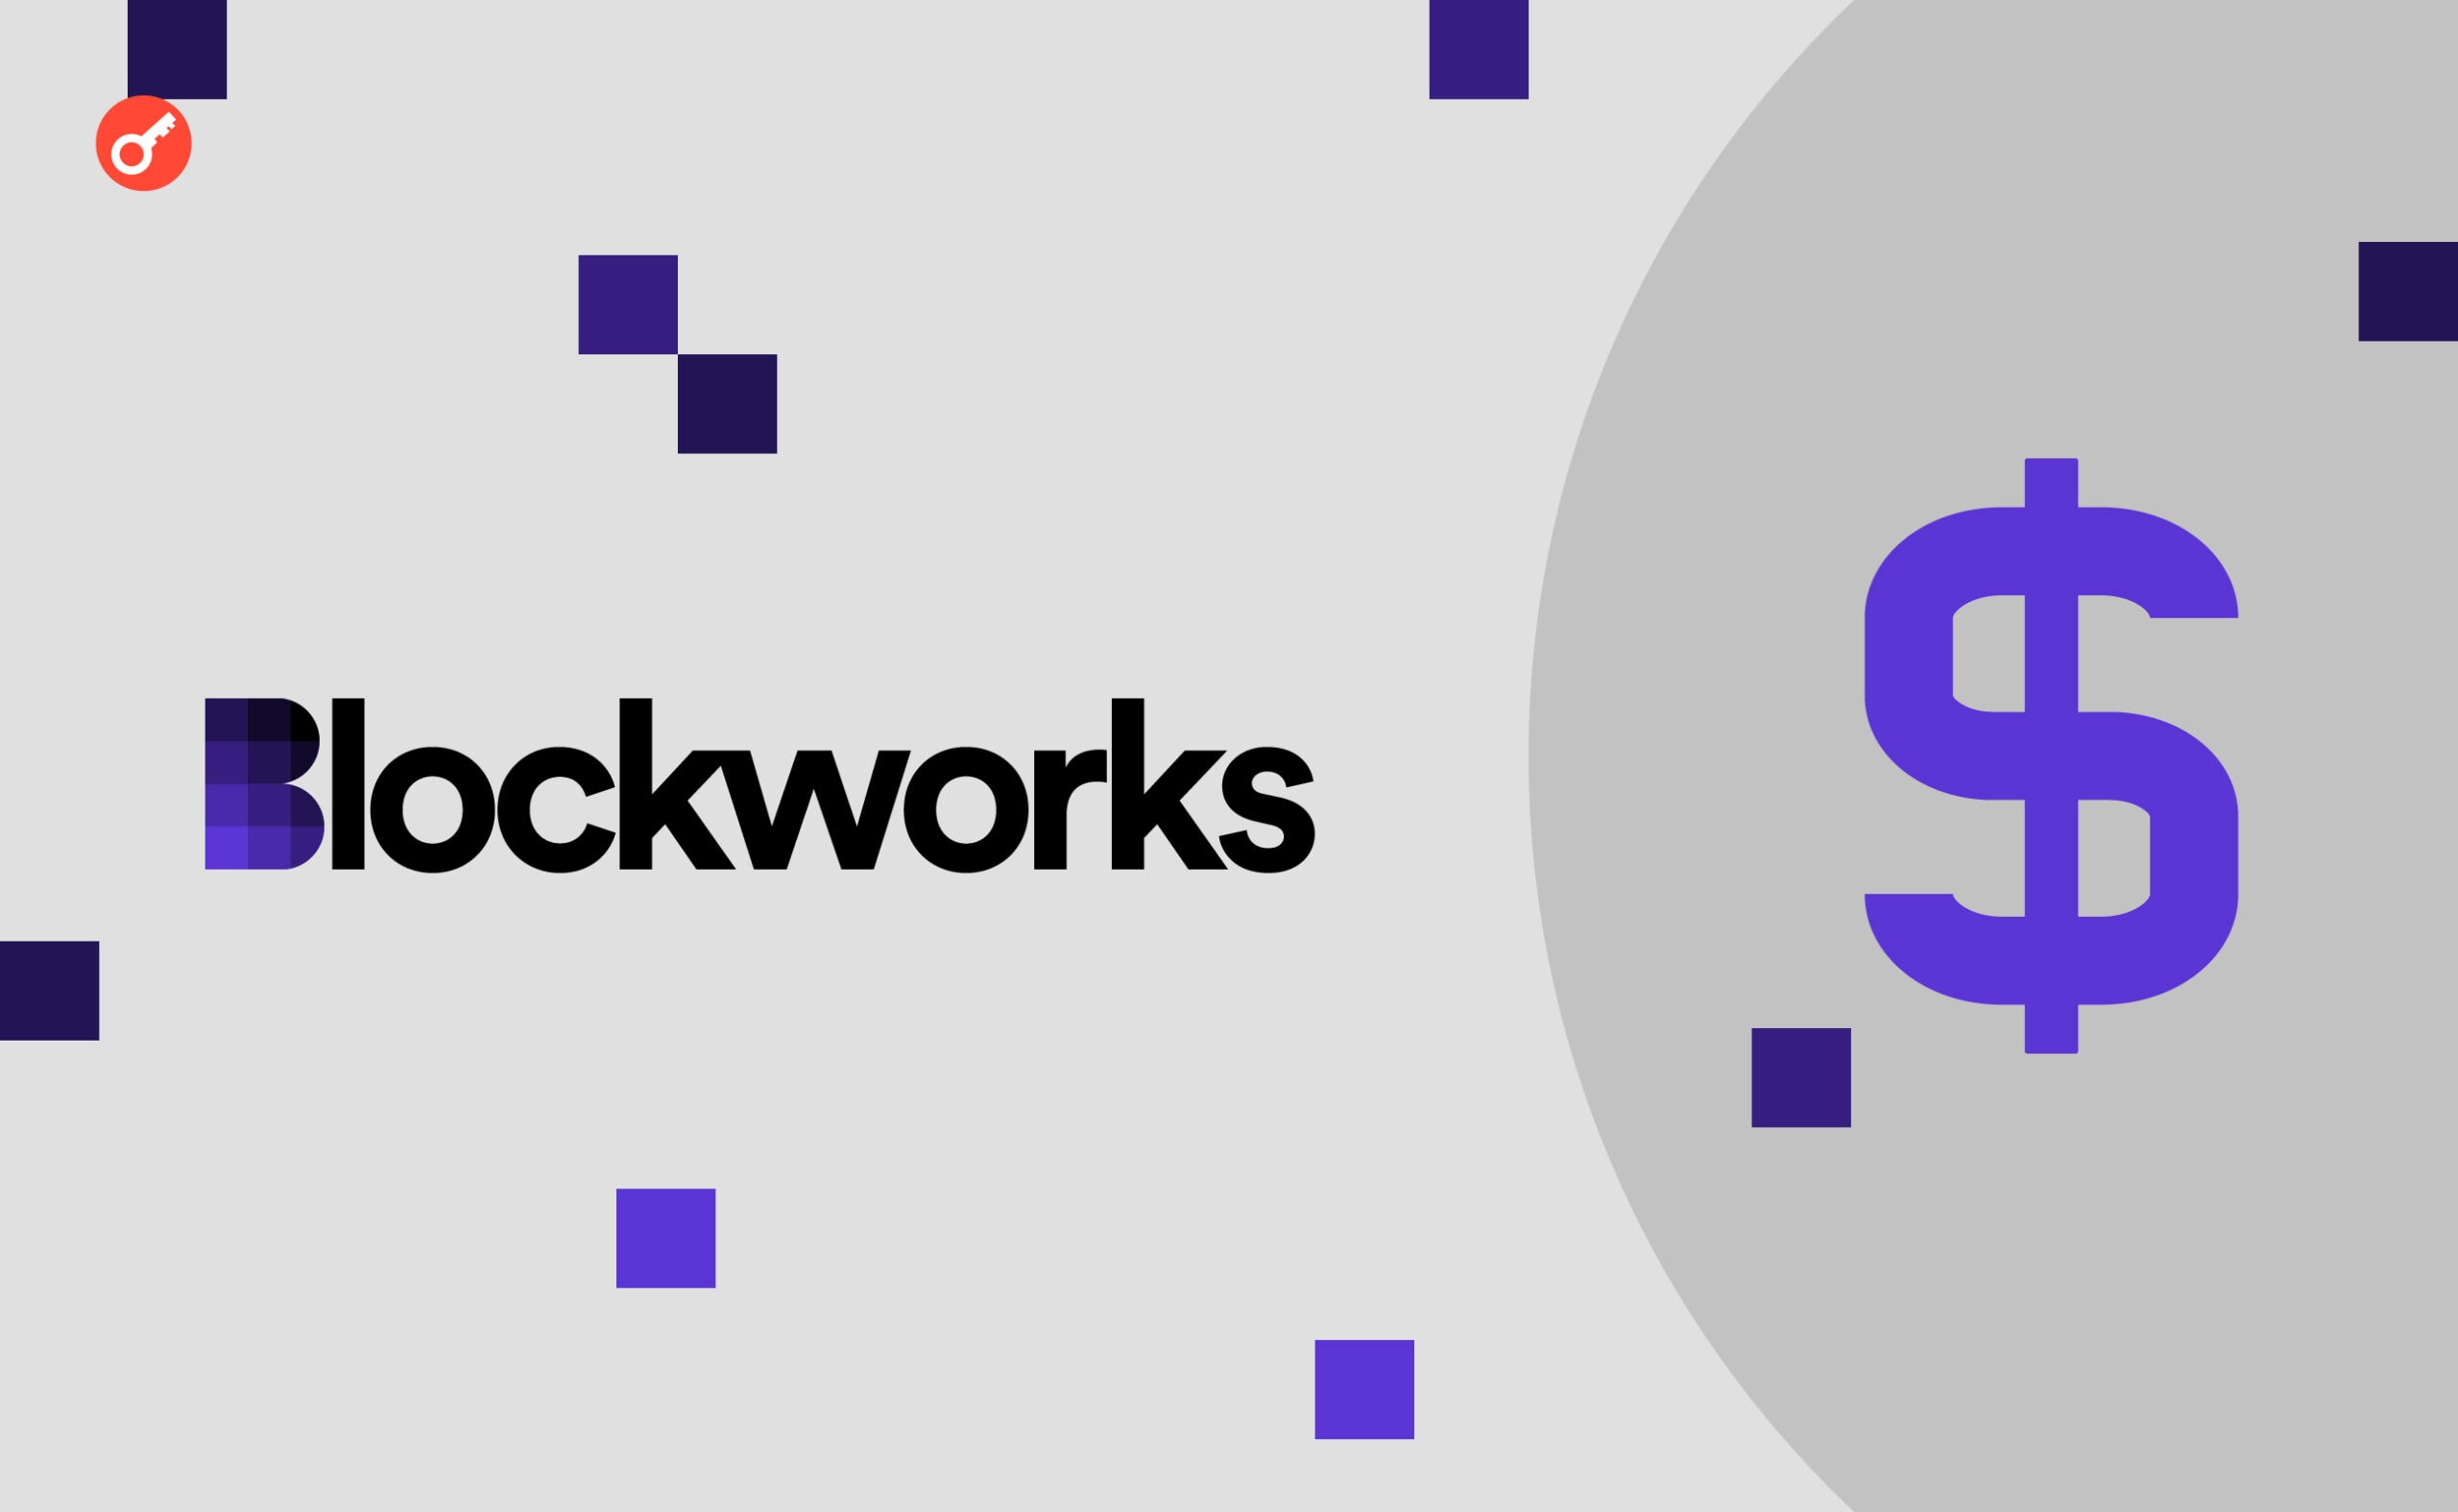 Blockworks залучили $12 млн за оцінки в $135 млн. Головний колаж новини.